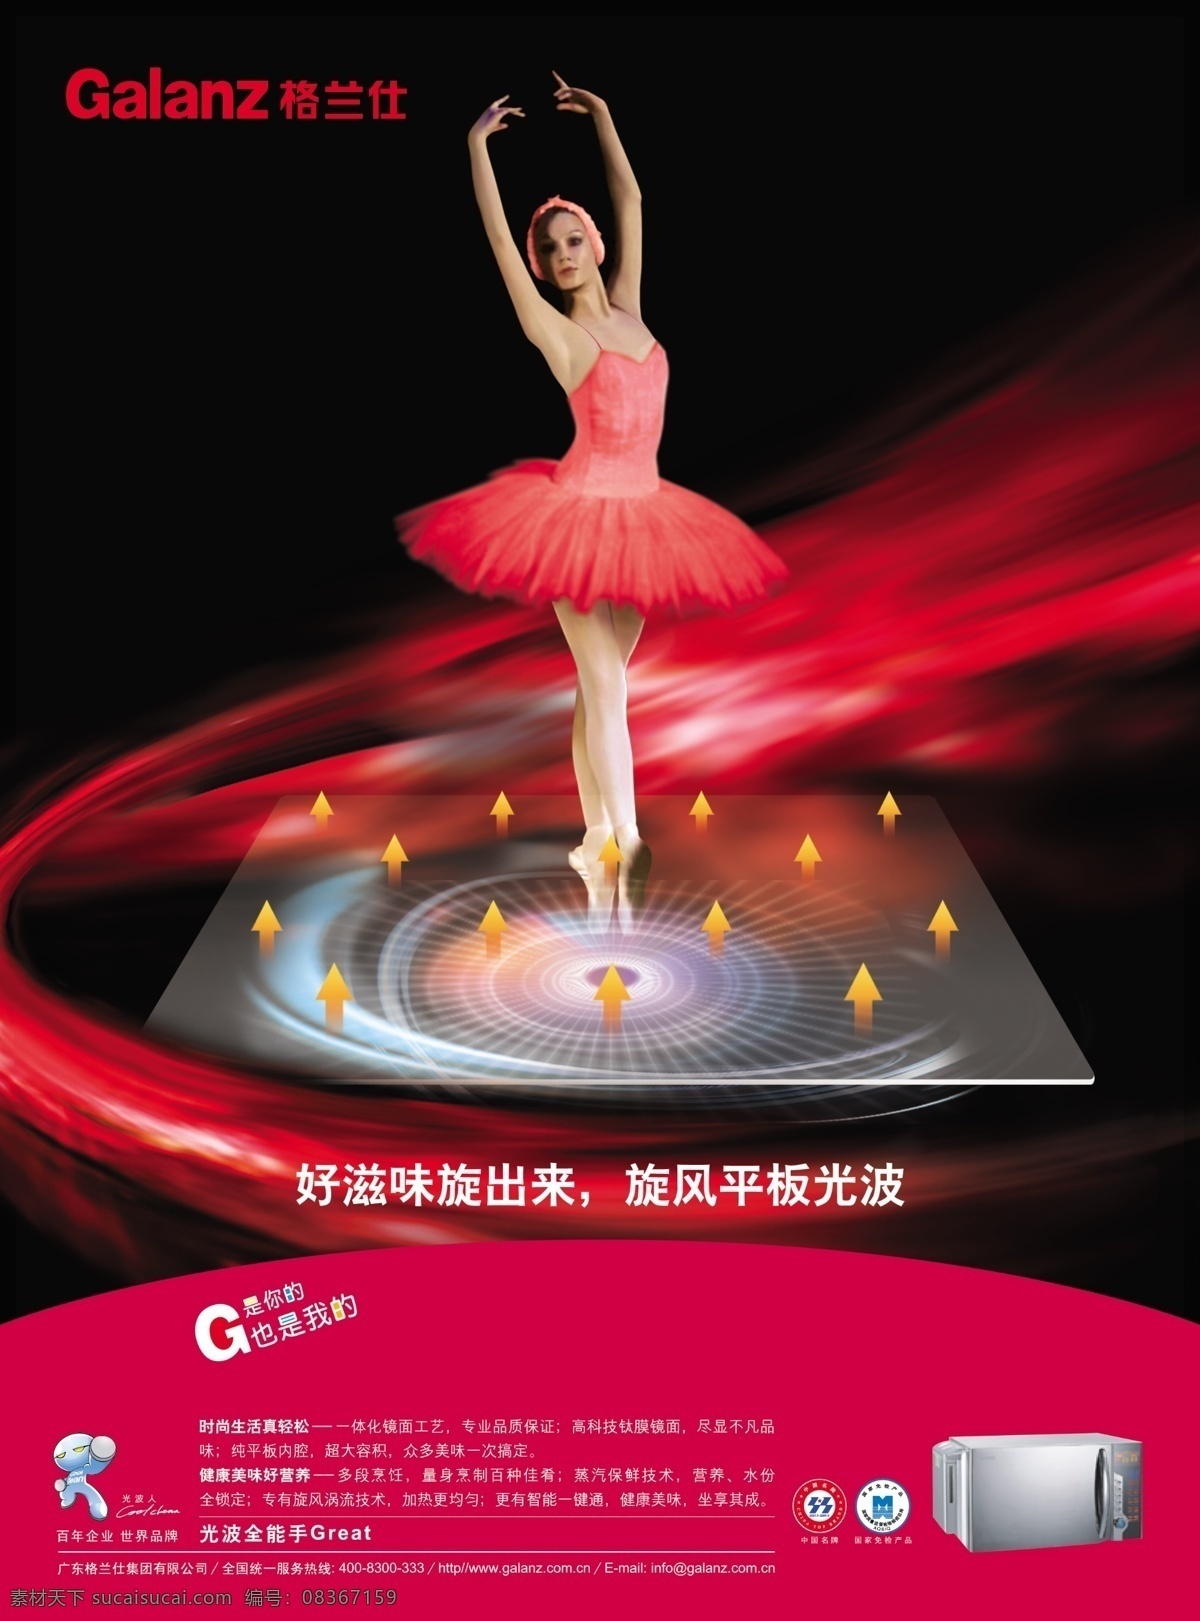 微波炉 广告 光影效果 跳舞美女 宣传单 宣传单背景 宣传单设计 模板 海报背景图